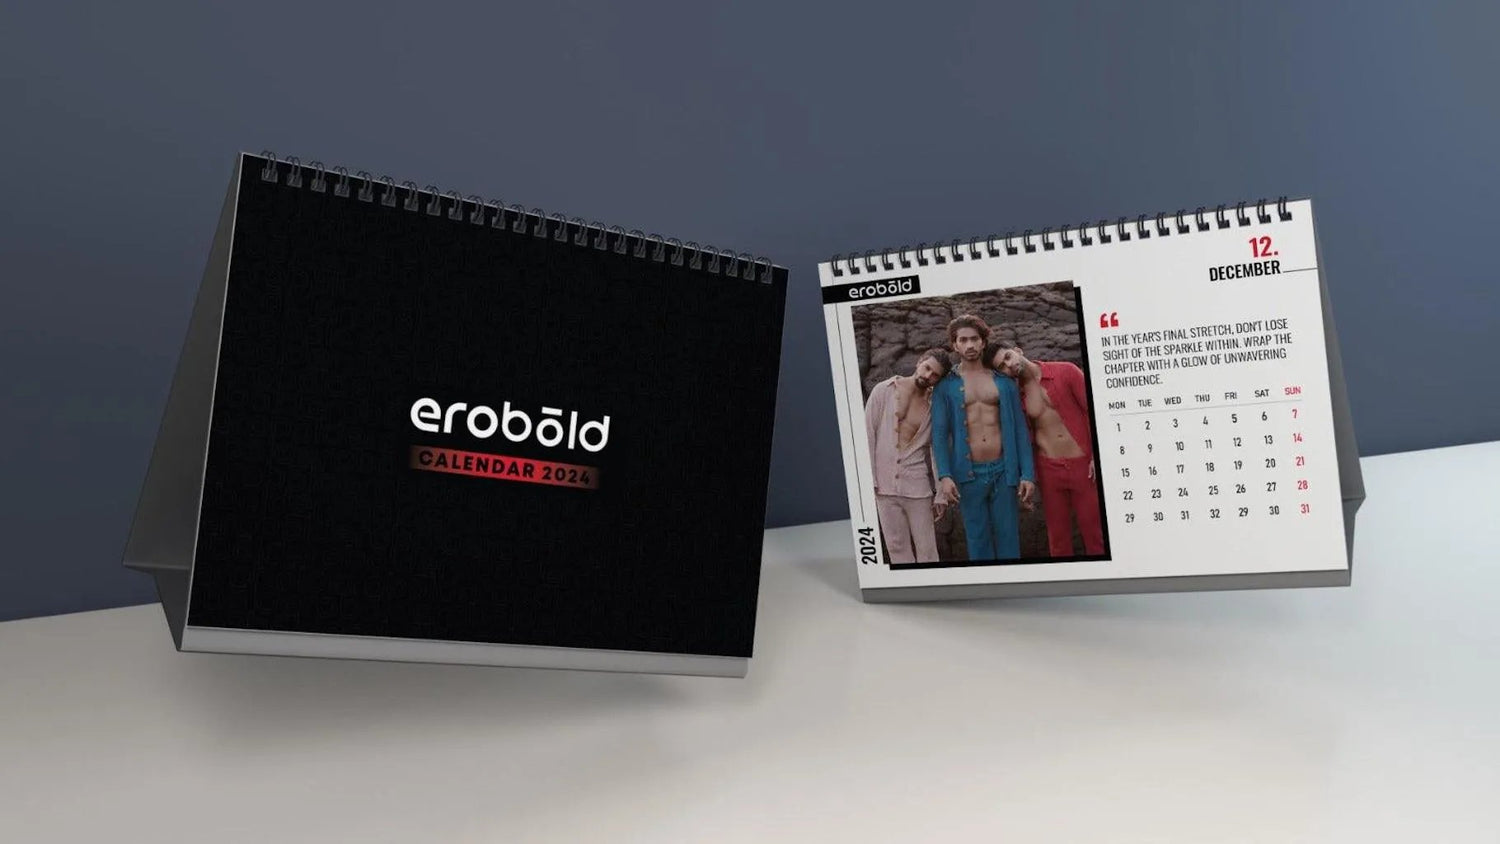 Erobold-Exclusive-Merchandise